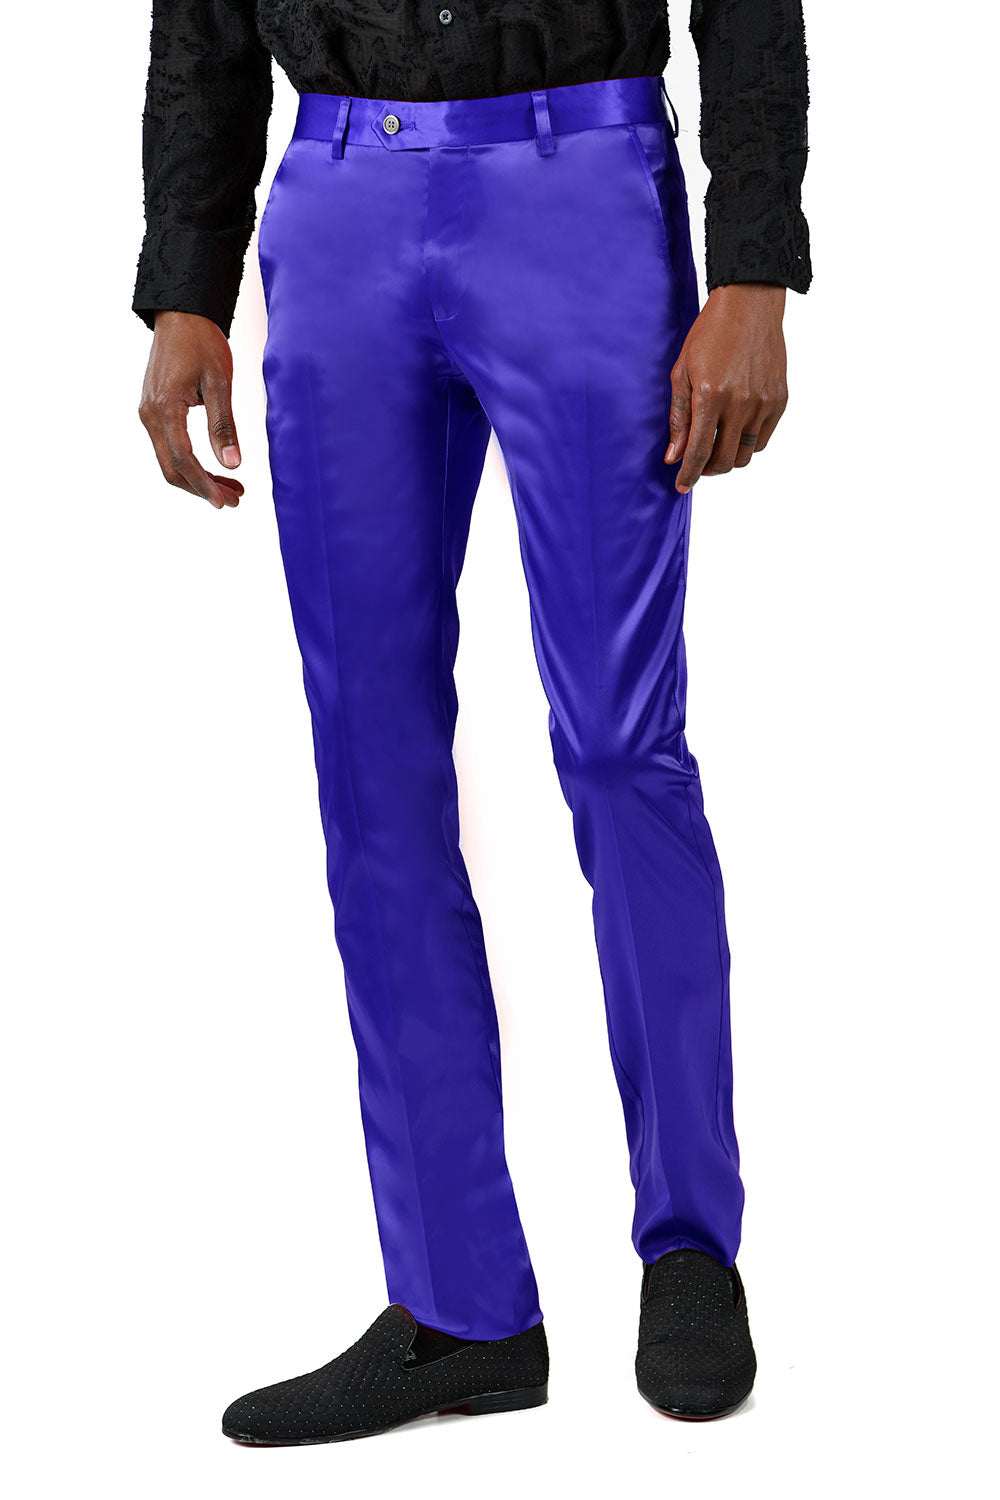 BARABAS Men's Solid Color Shiny Chino Pants VP1010 Royal